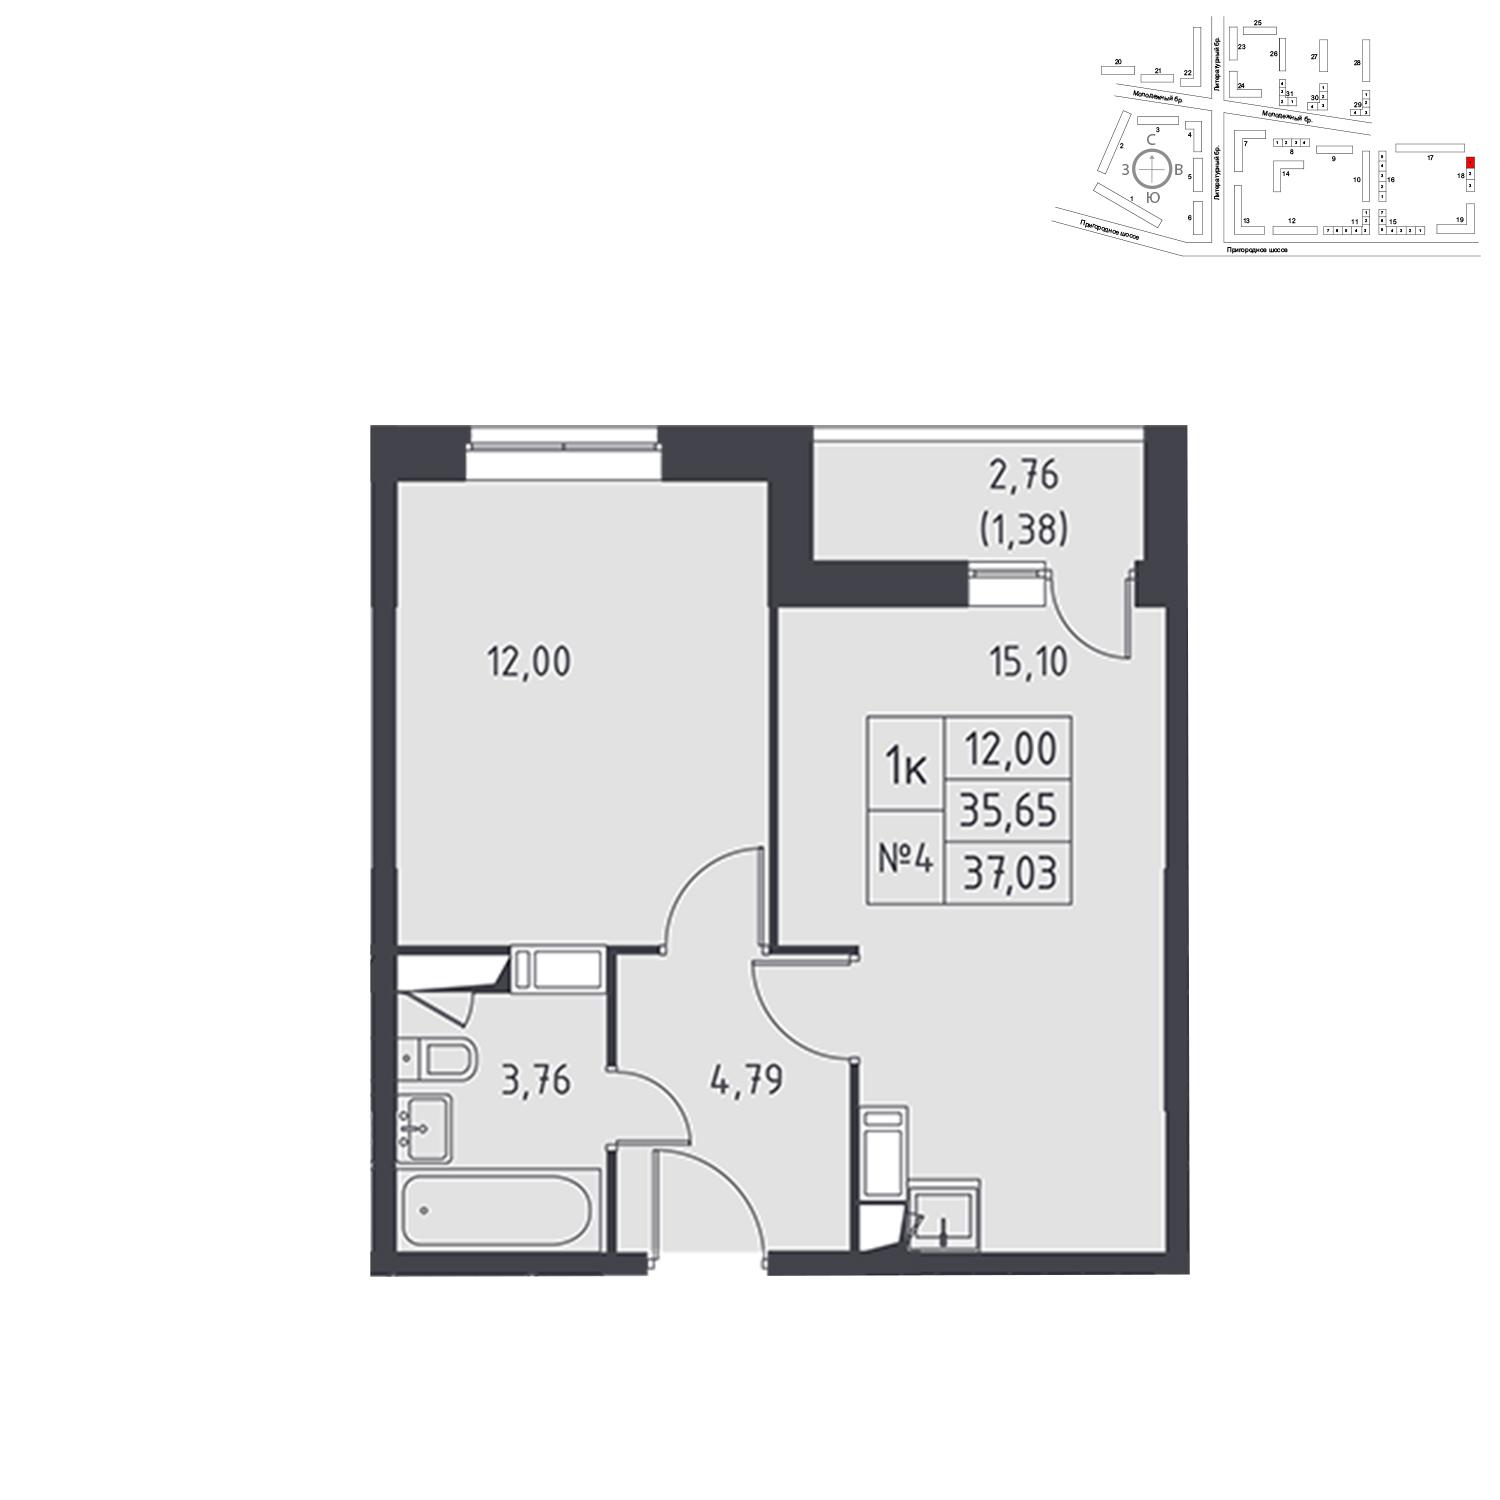 Продаётся 1-комнатная квартира в новостройке 37.0 кв.м. этаж 13/17 за 3 796 427 руб 